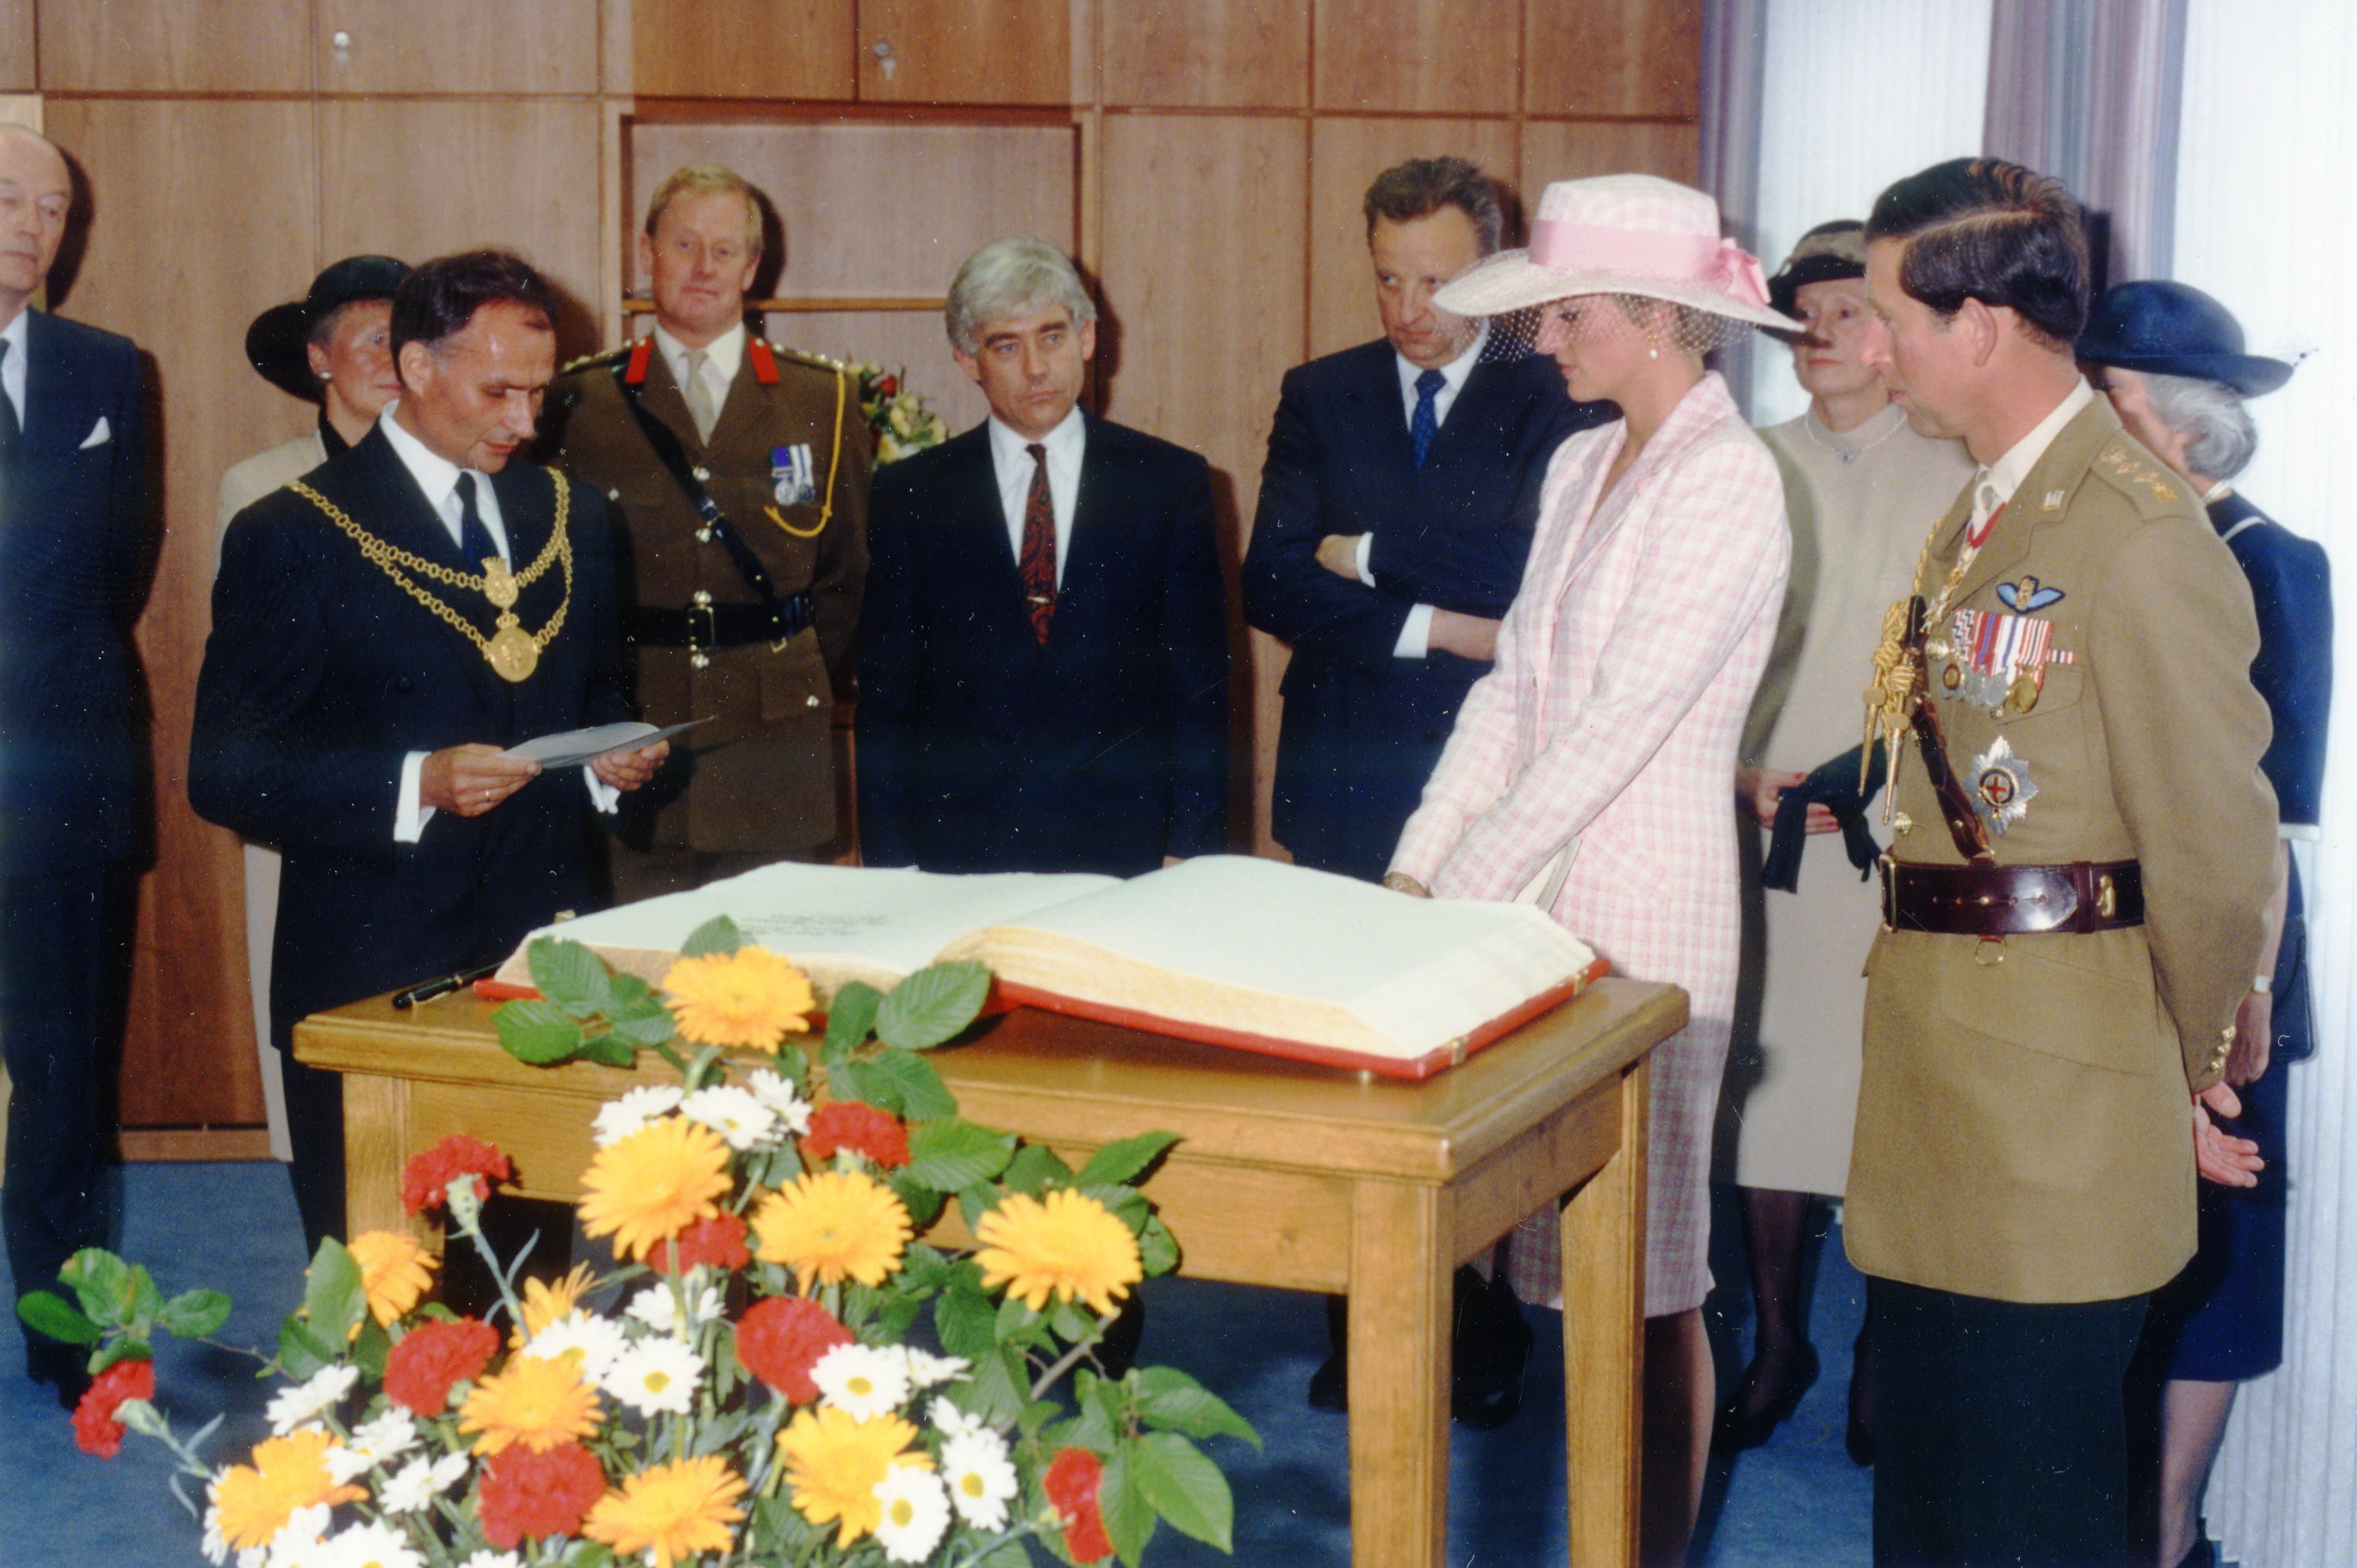 Oberbürgermeister Dr. Jörg Twenhöven begrüßt Prince Charles und Princess Diana 